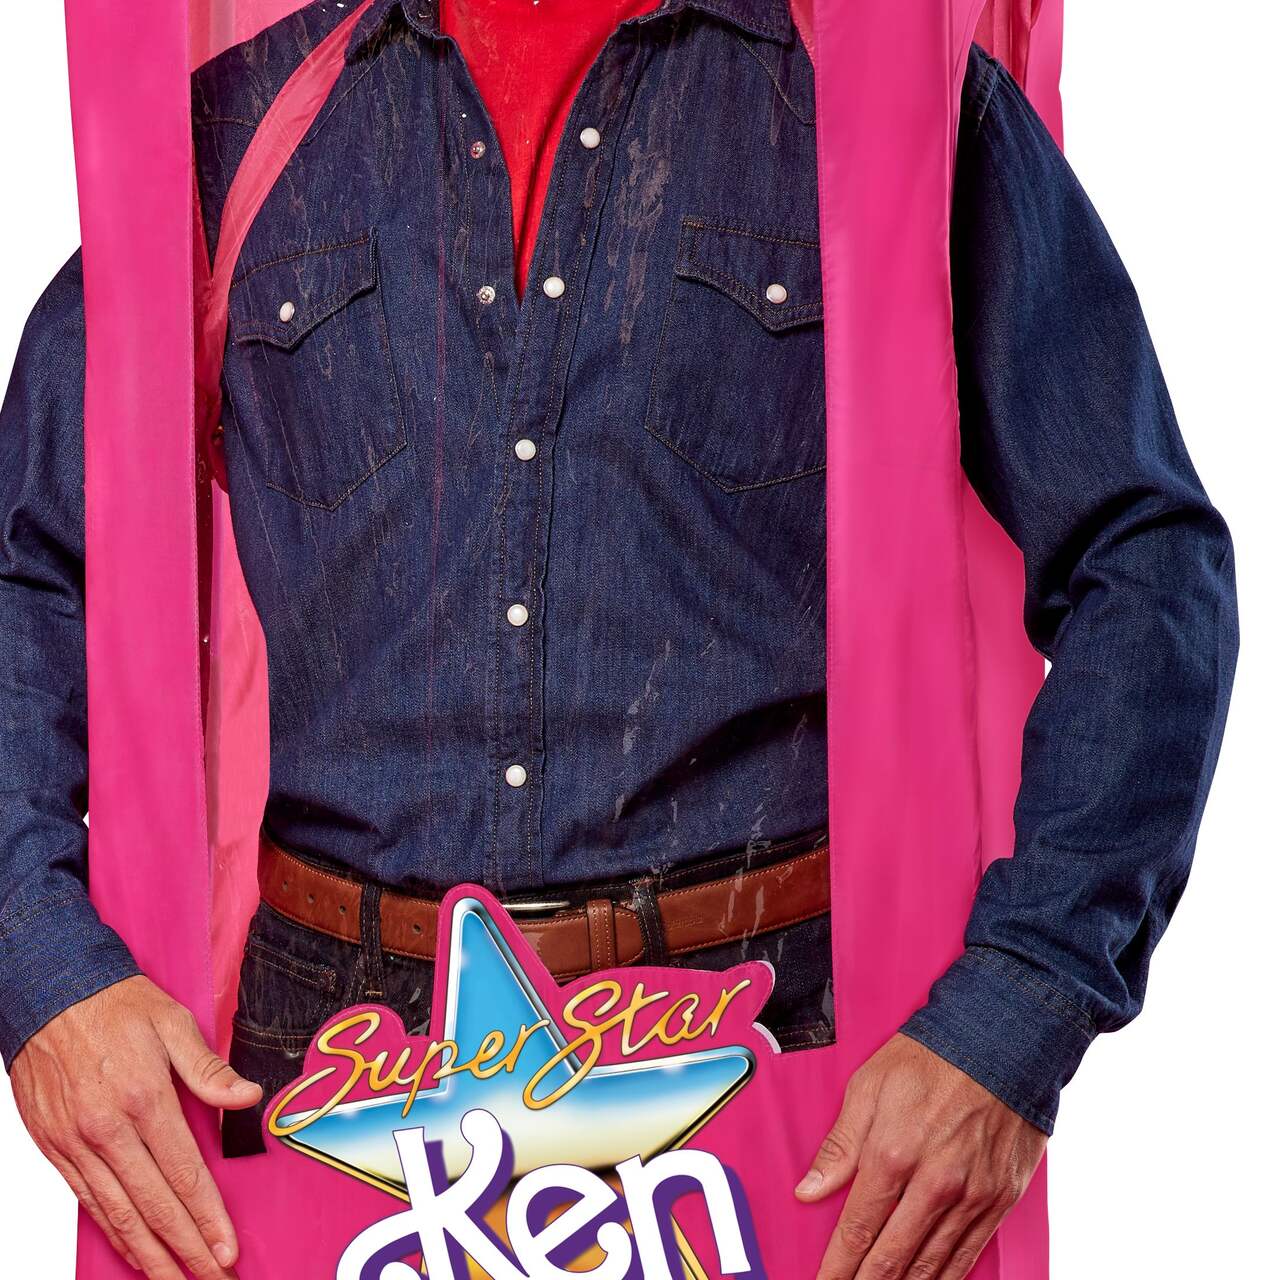 Ken Beige Jumpsuit  outfit from Toy Story 3., Ken Best Bu…